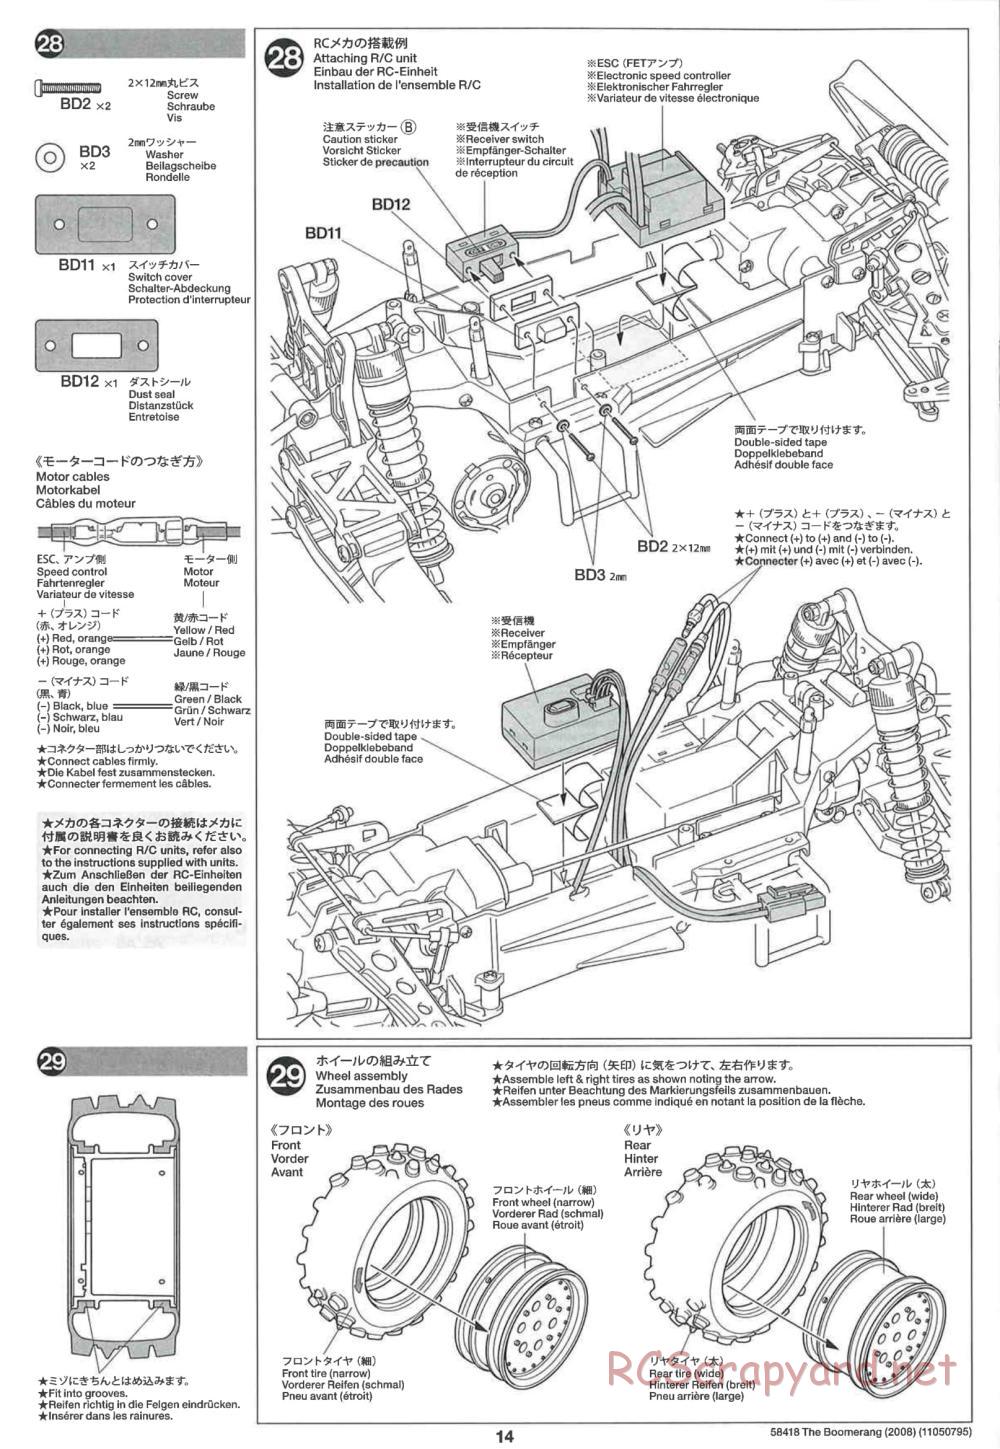 Tamiya - The Boomerang 2008 Chassis - Manual - Page 14